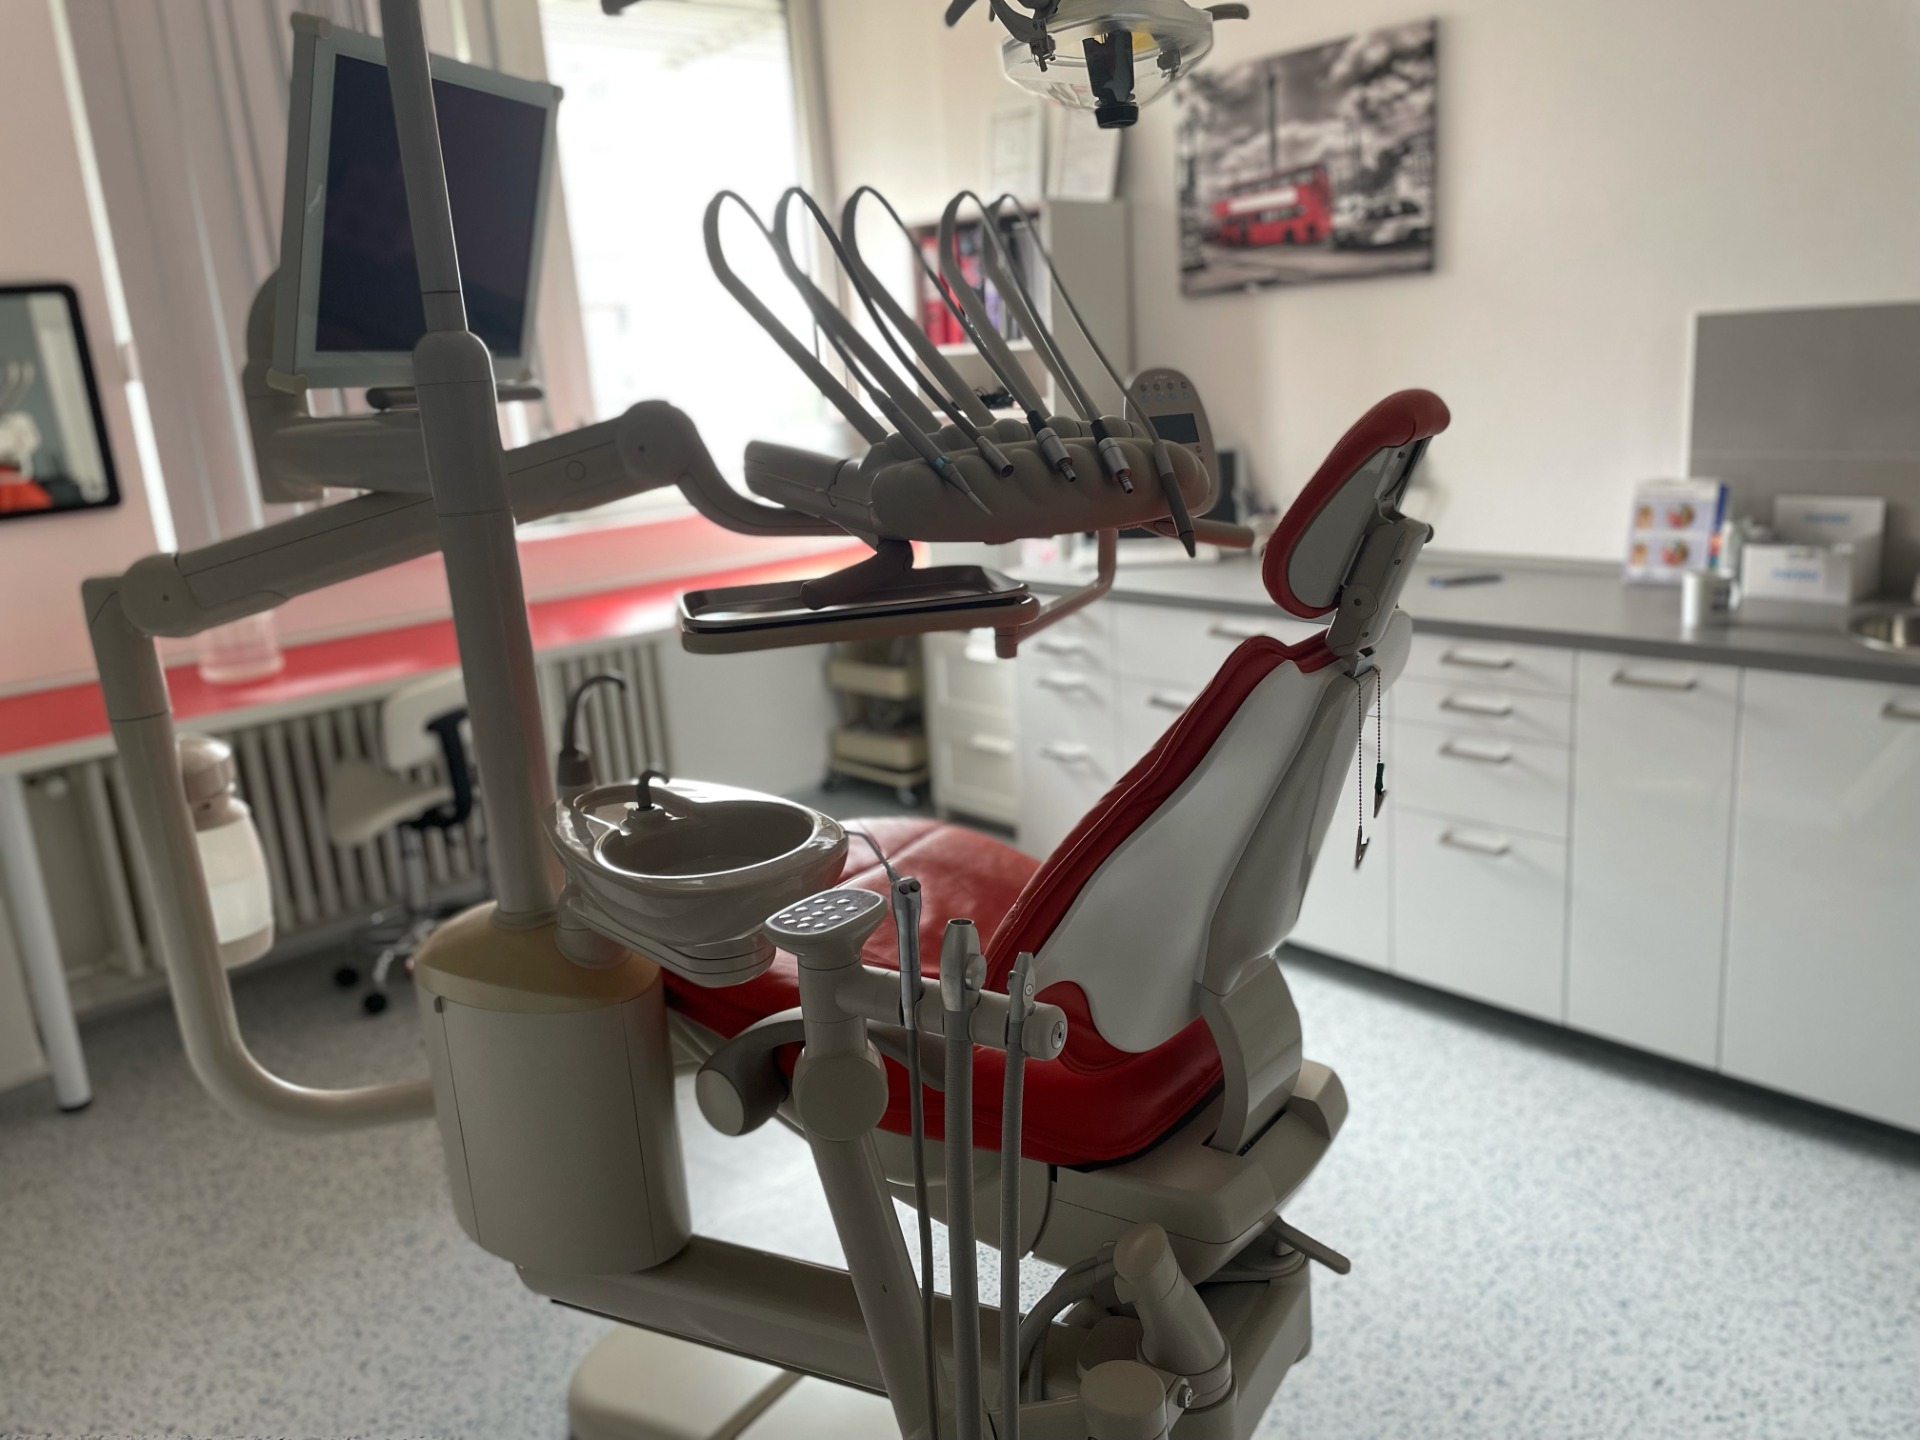 Stomatologie Praha 5 - soukromá zubní ordinace rodinného typu - přijímáme nové pacienty!